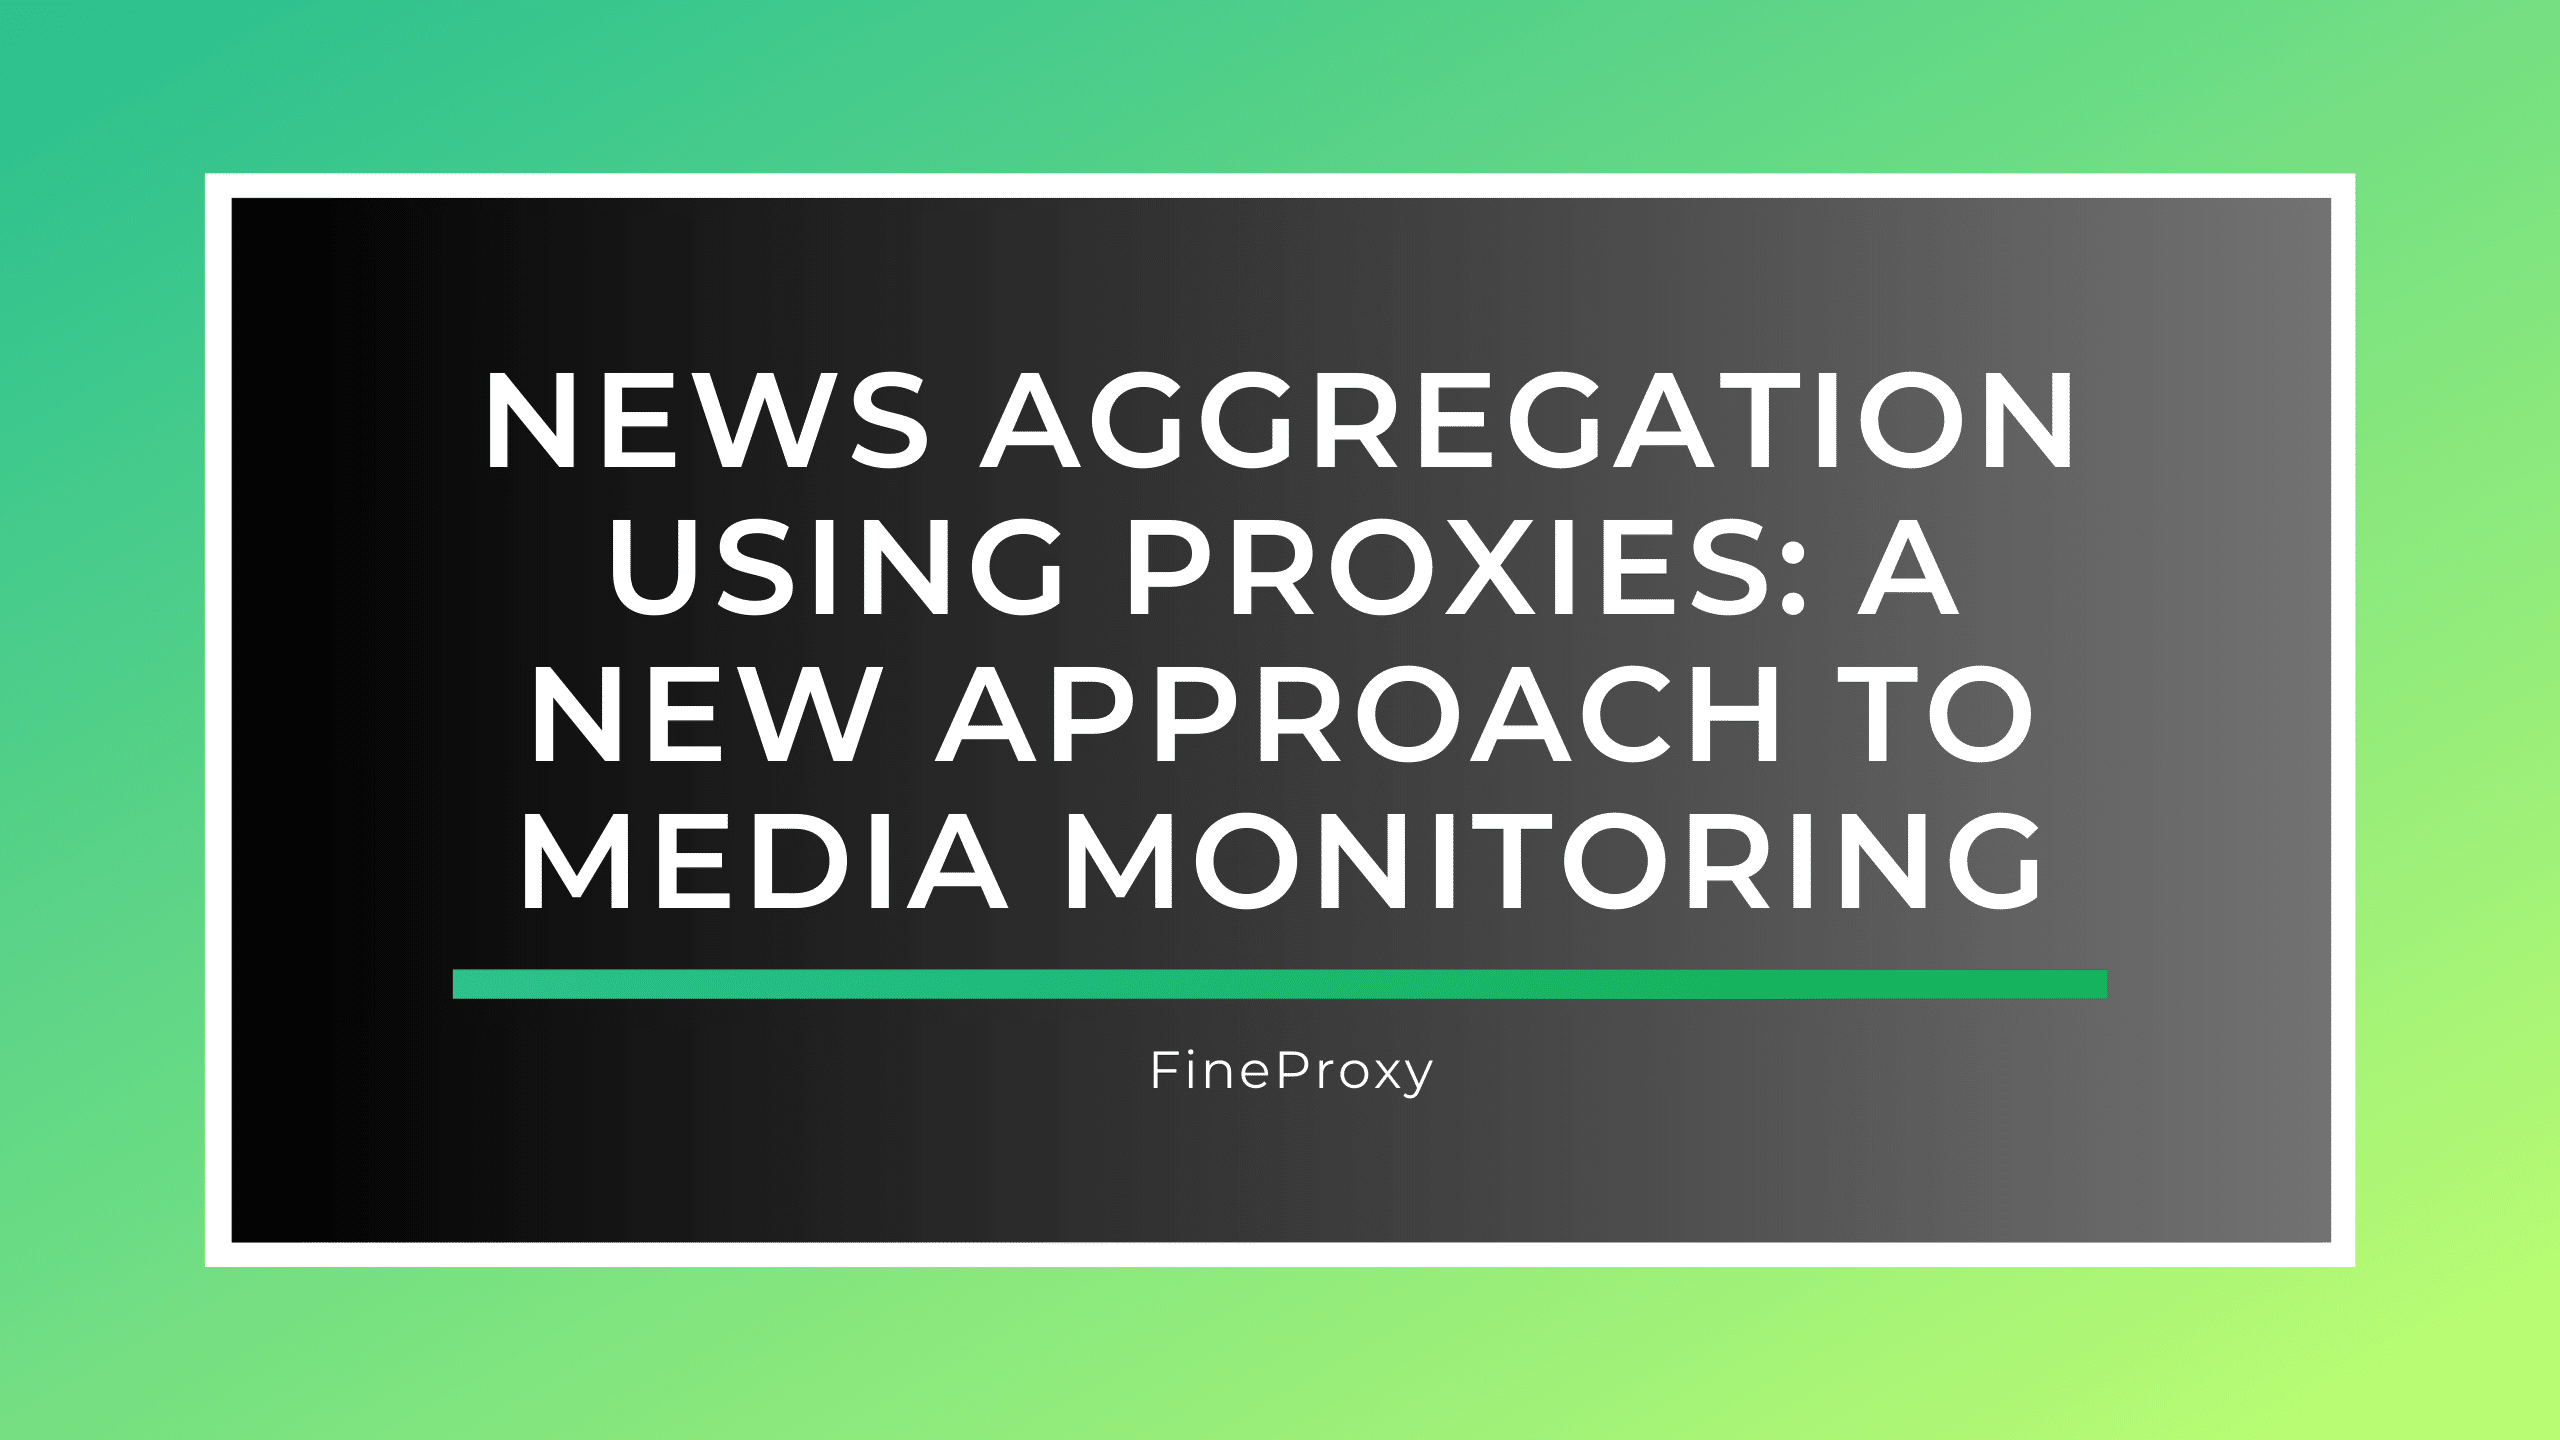 Агрегация новостей с помощью прокси: новый подход к мониторингу СМИ